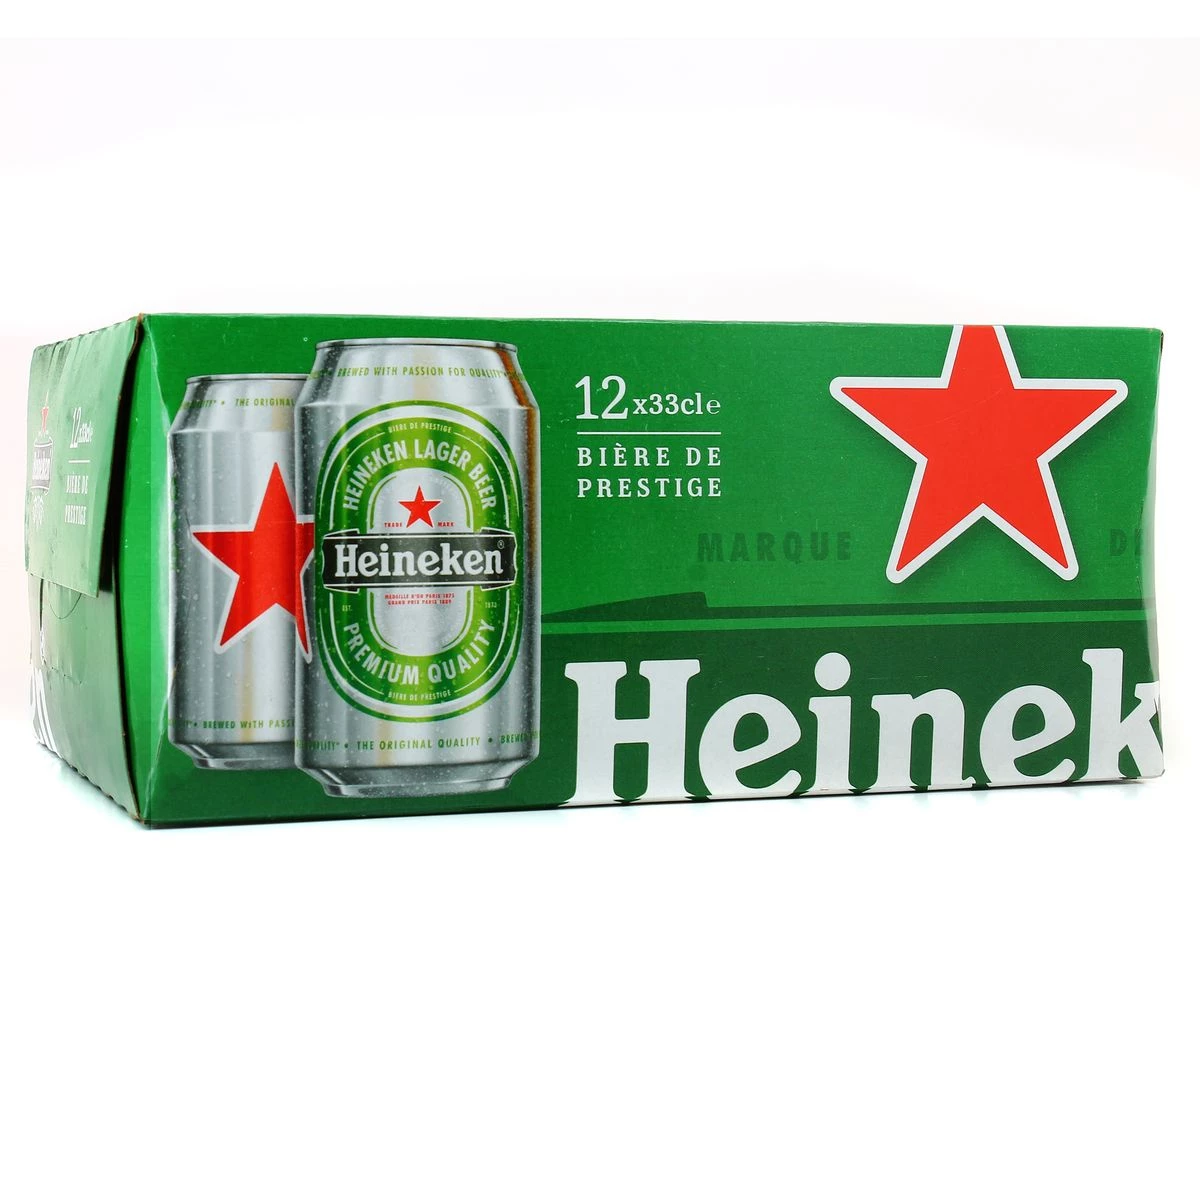 Blonde beer, 12x33cl - HEINEKEN